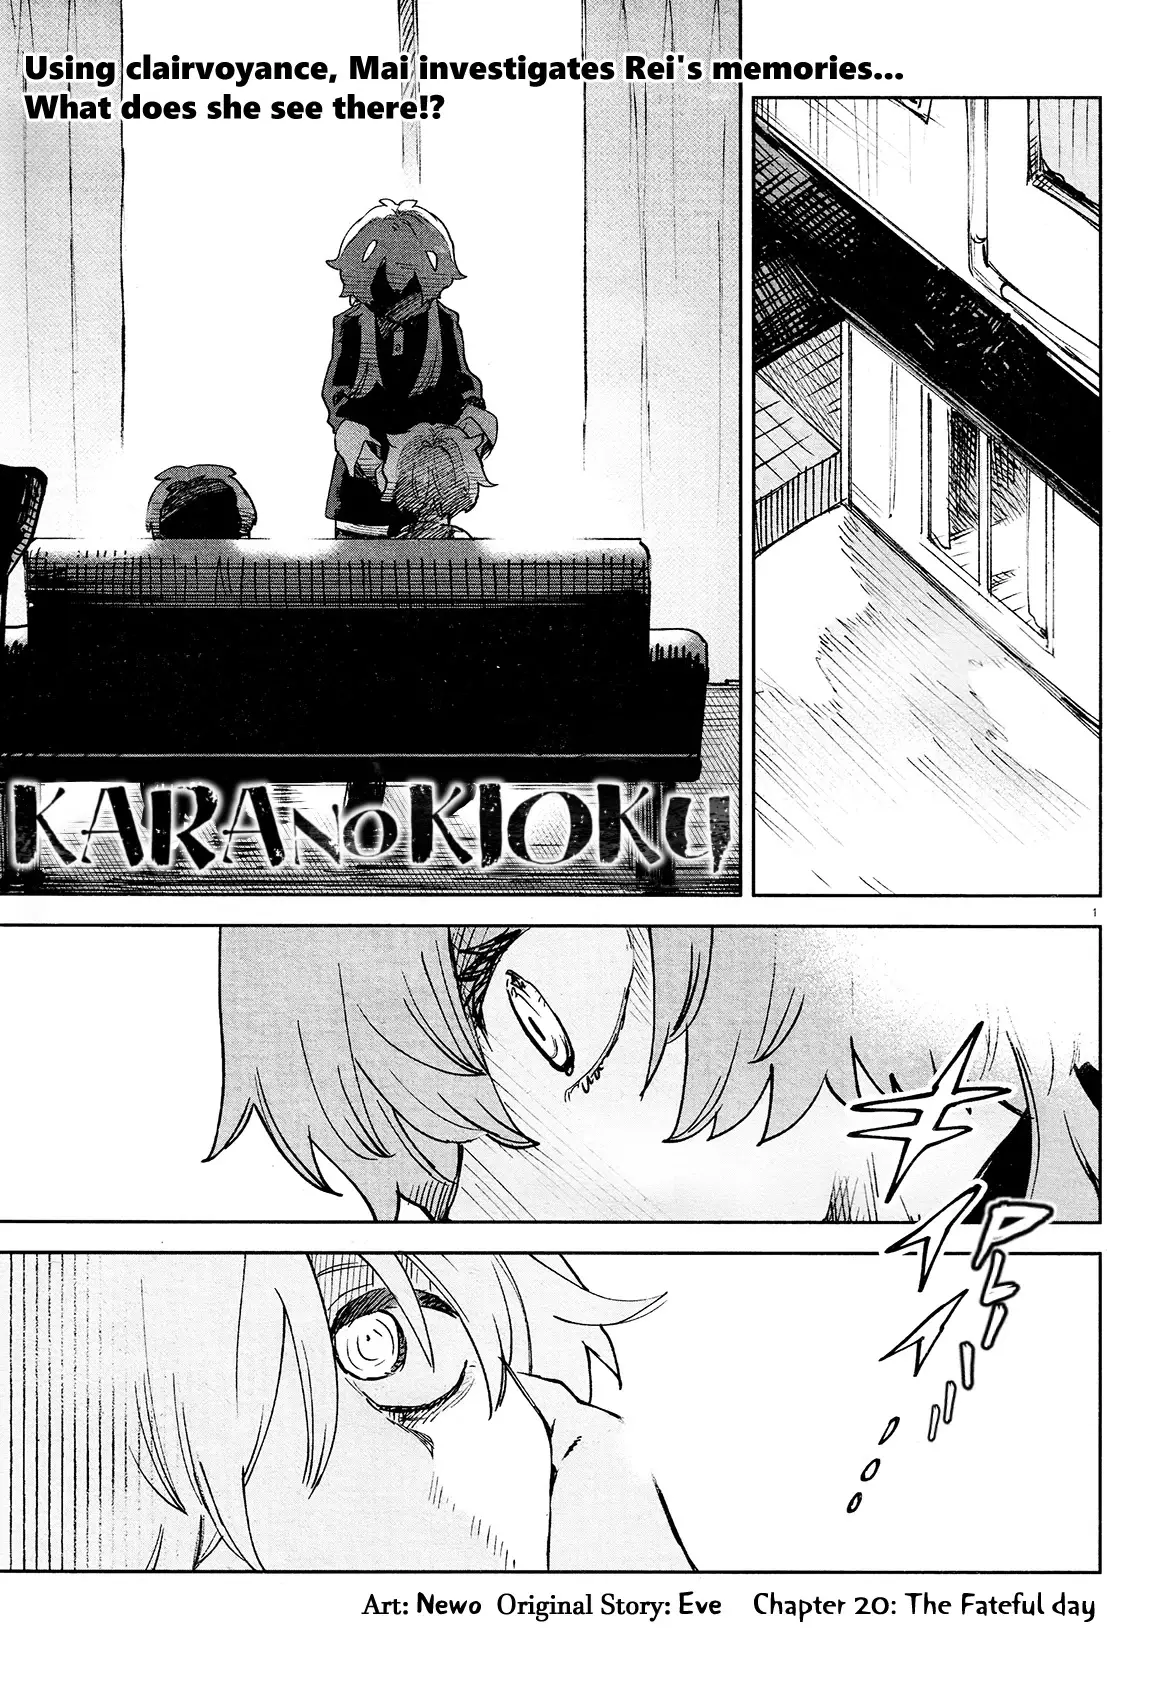 Kara No Kioku - 20 page 1-4ed754ee